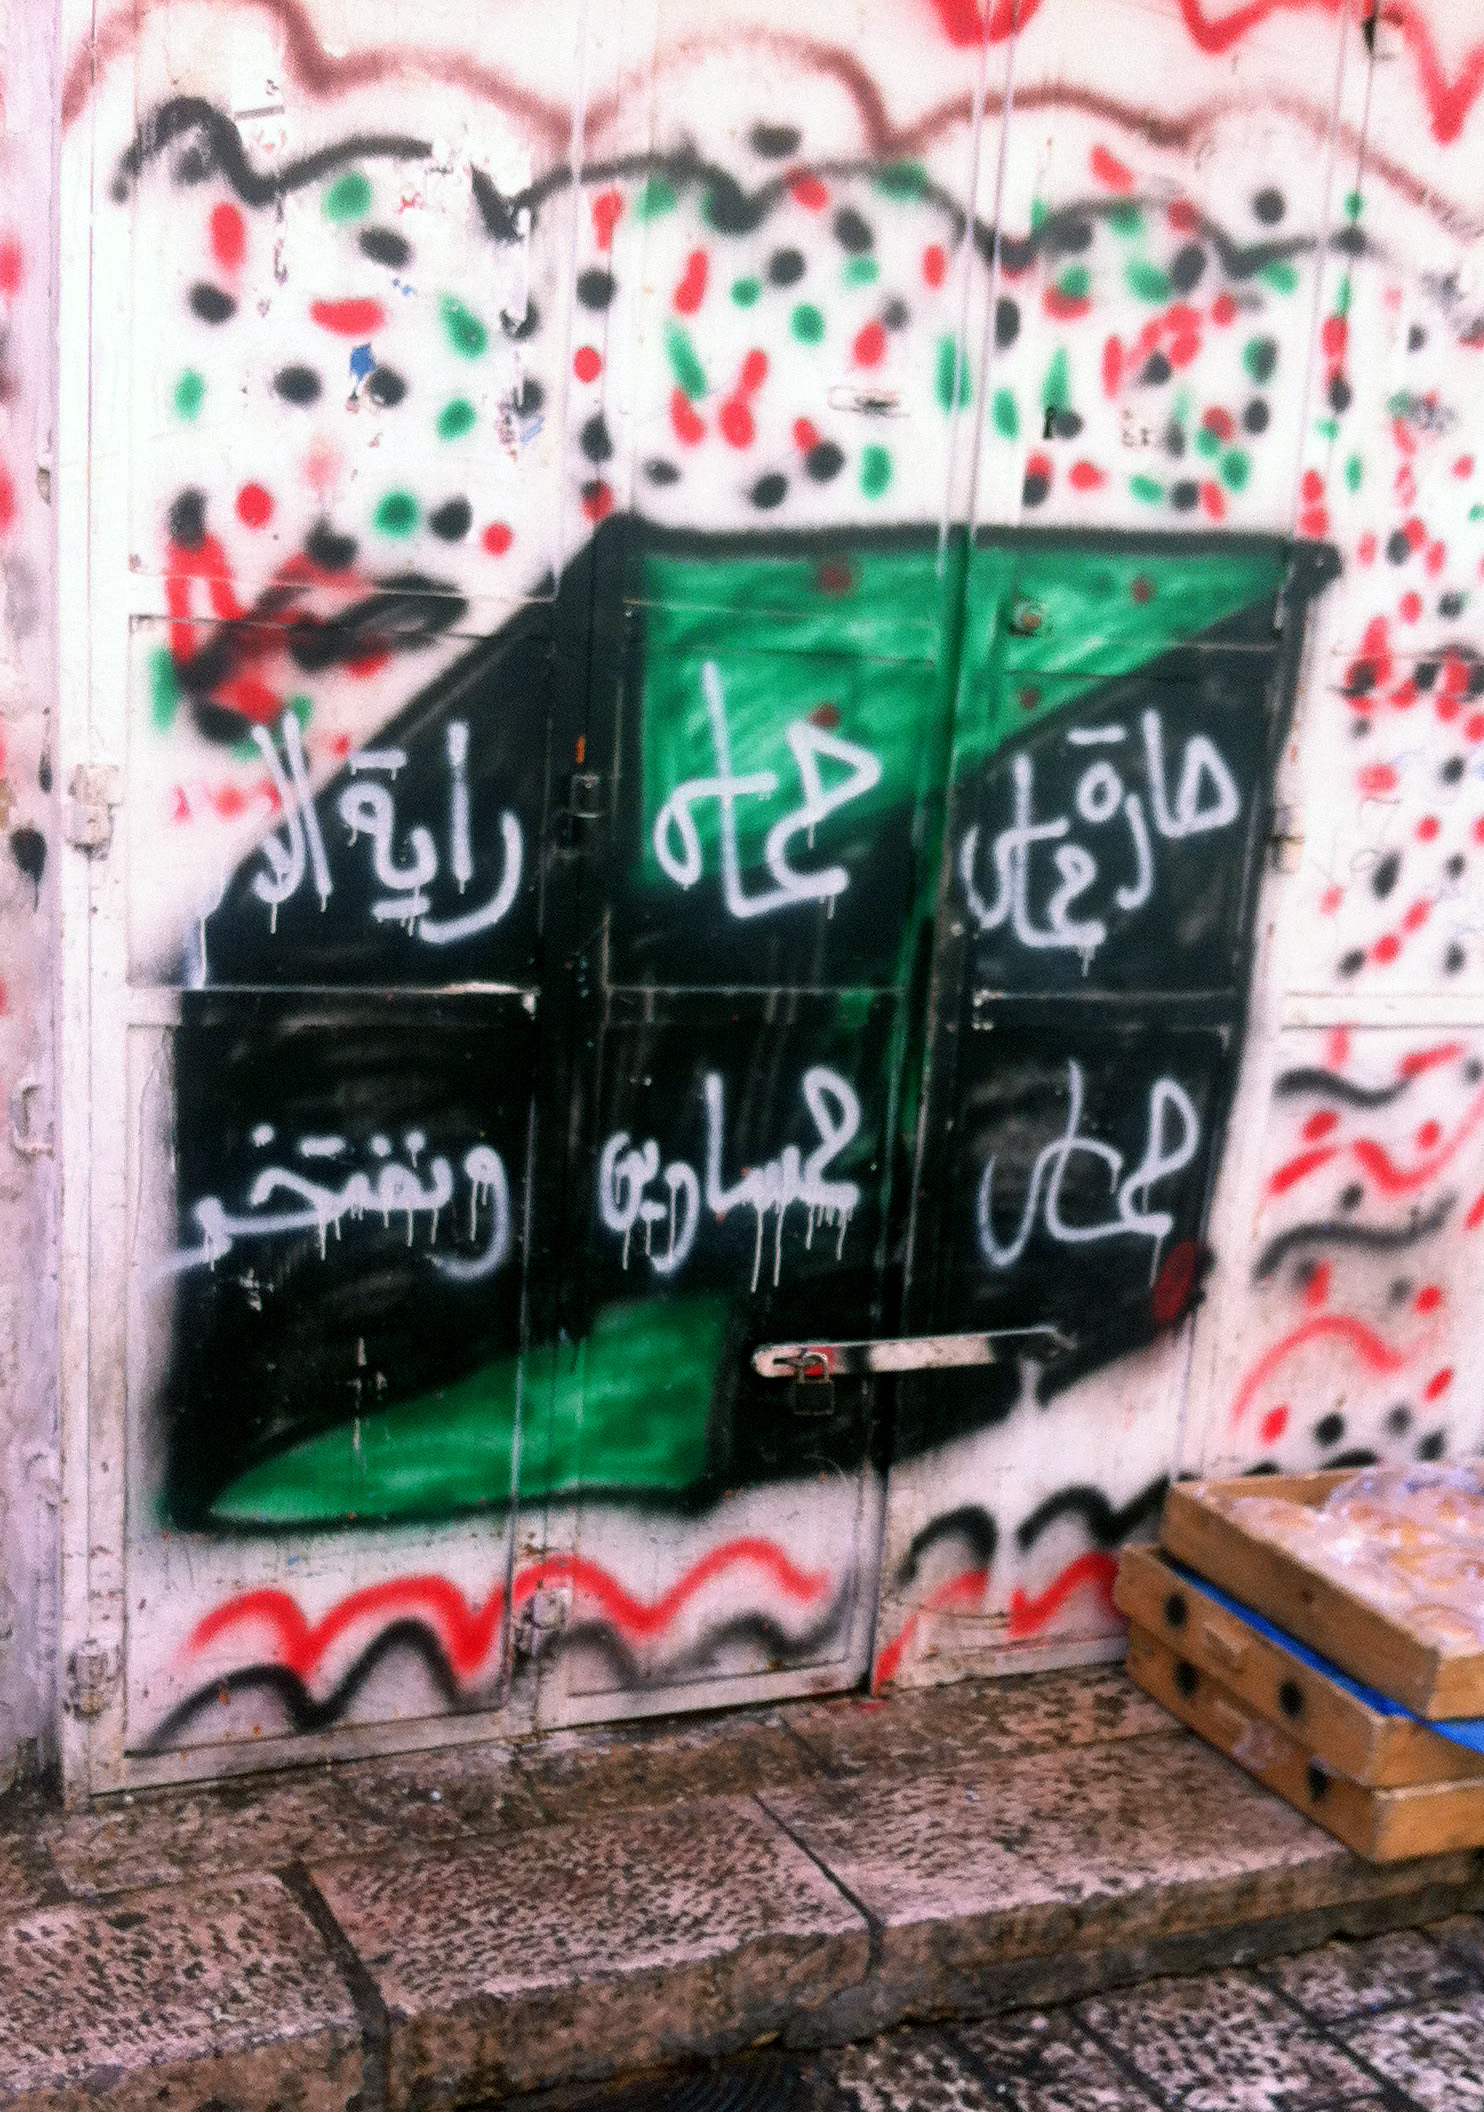 בהיעדר יכולת לכנס עצרות, חמאס מבליטה את נוכחותה בפרהסיה של העיר בכתובות קיר. בתמונה: כתובת של חמאס בשכונת באב א-זהרה: "שכונת חמאס. חמאס היא דגל האִסלאם ואנו גאים בה." (צילום: פנחס ענברי) 